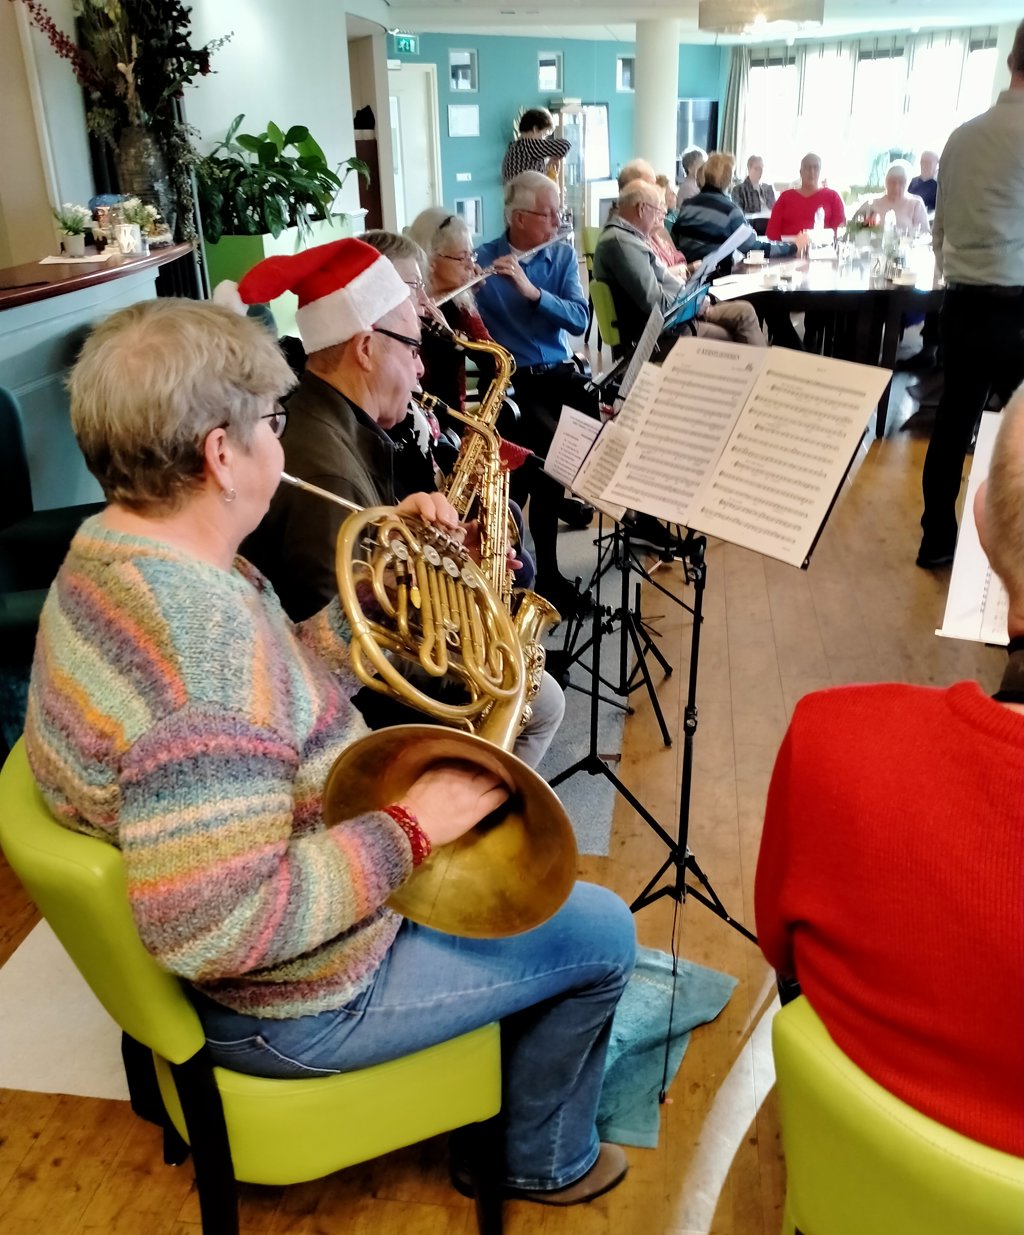 Muziek is voor mensen met dementie heel belangrijk.